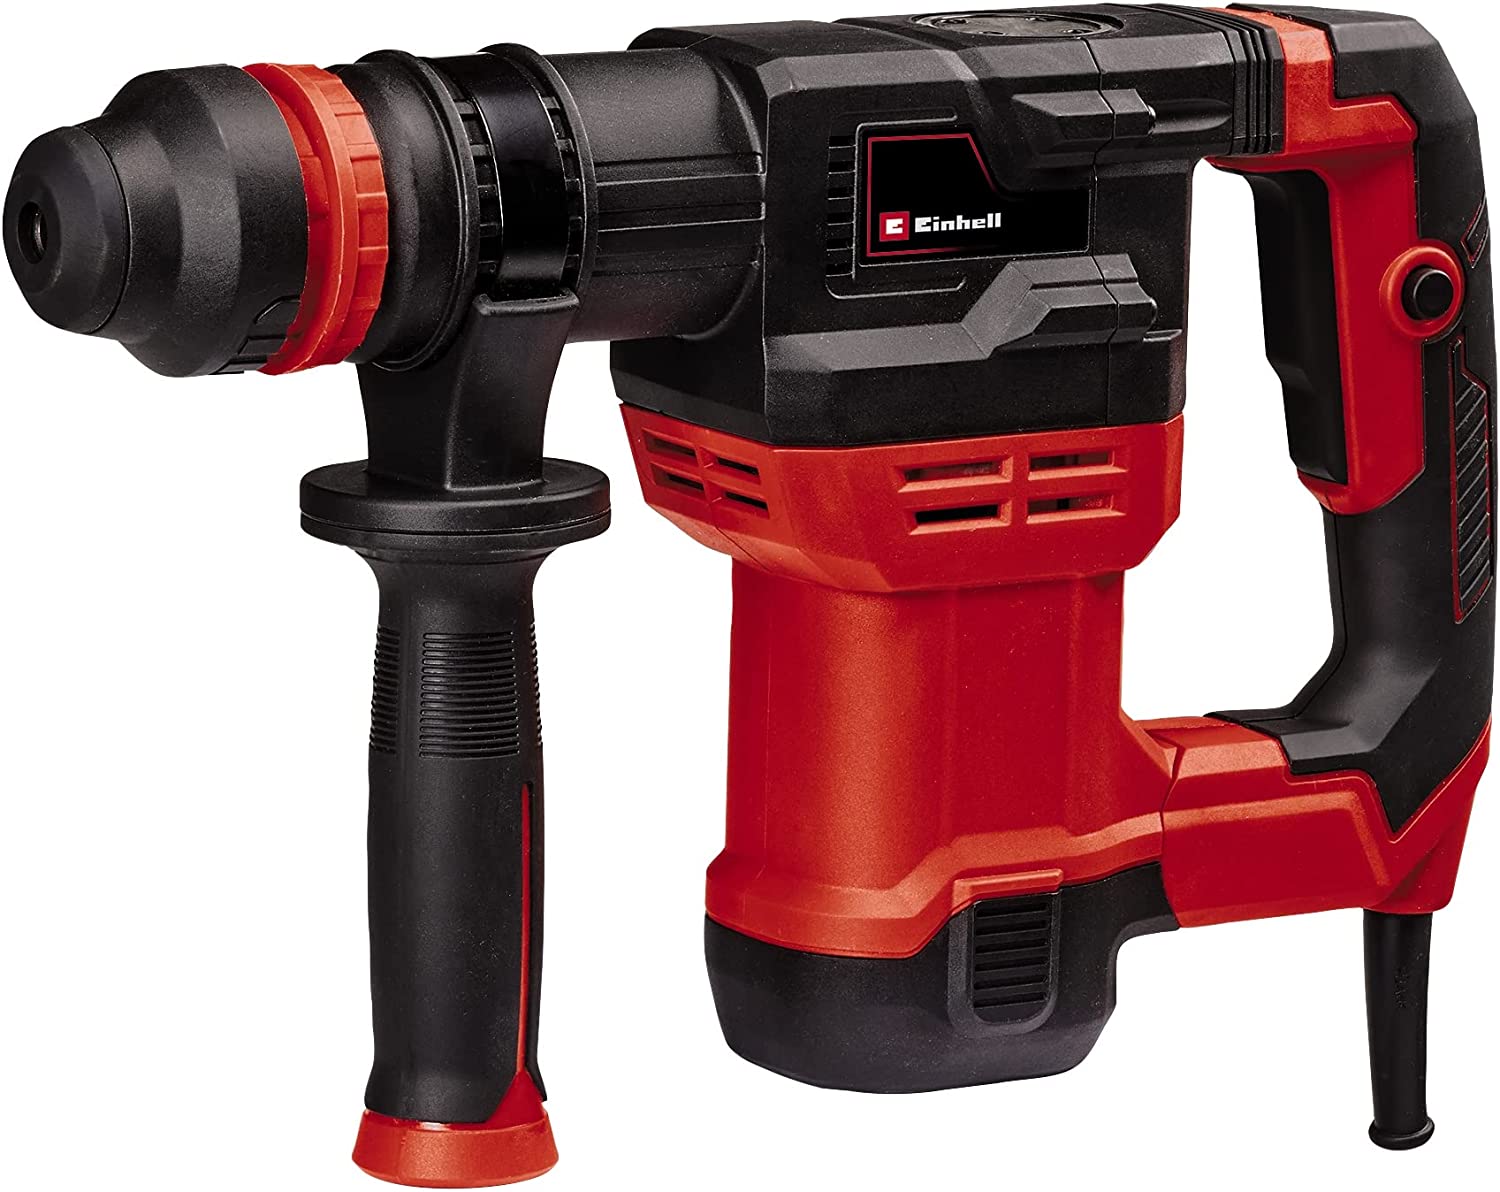 Einhell Demolition hammer TE-DH 5 (red/black, 750 watts) 4139135 (4006825657555)